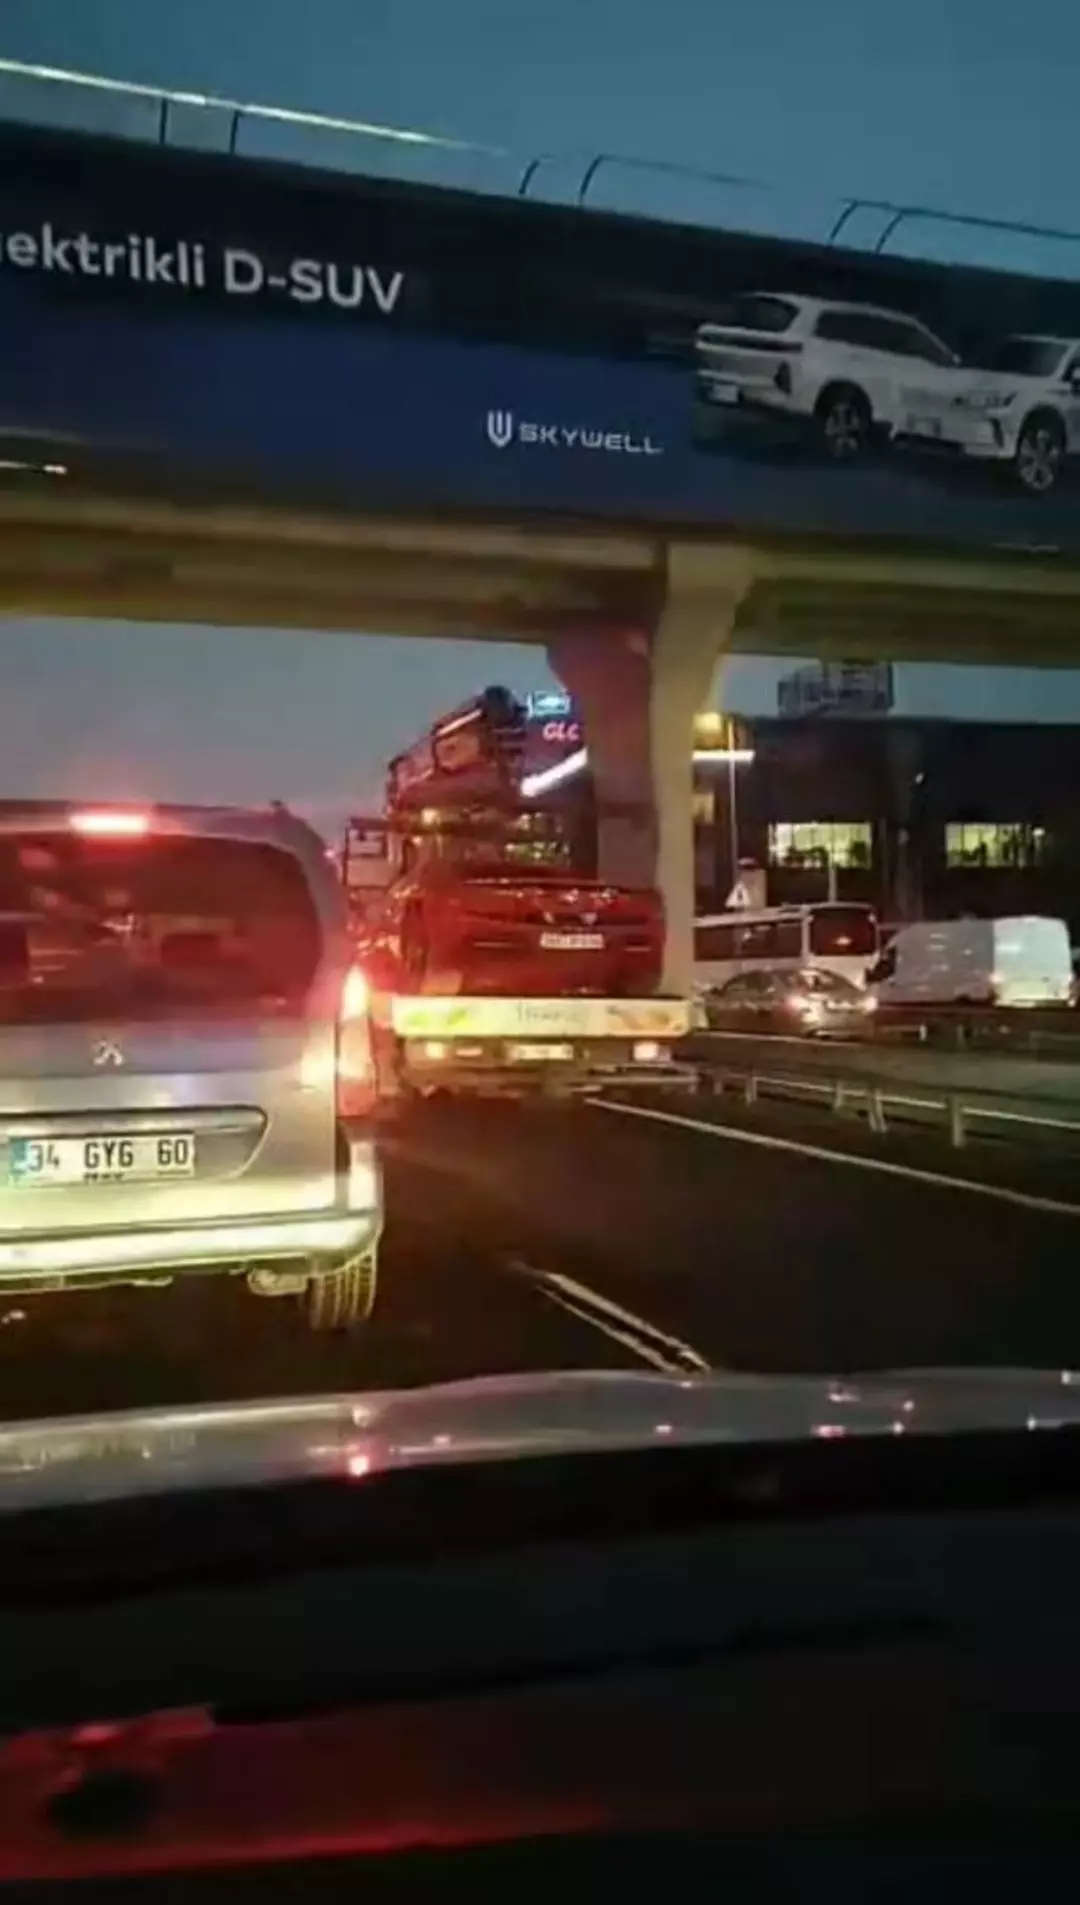 Trafikteki konvoyu görenler şaşırdı! Dilan ve Engin Polat'ın lüks araçları 'günlük otopark ücreti' nedeniyle TMSF'ye çekildi!